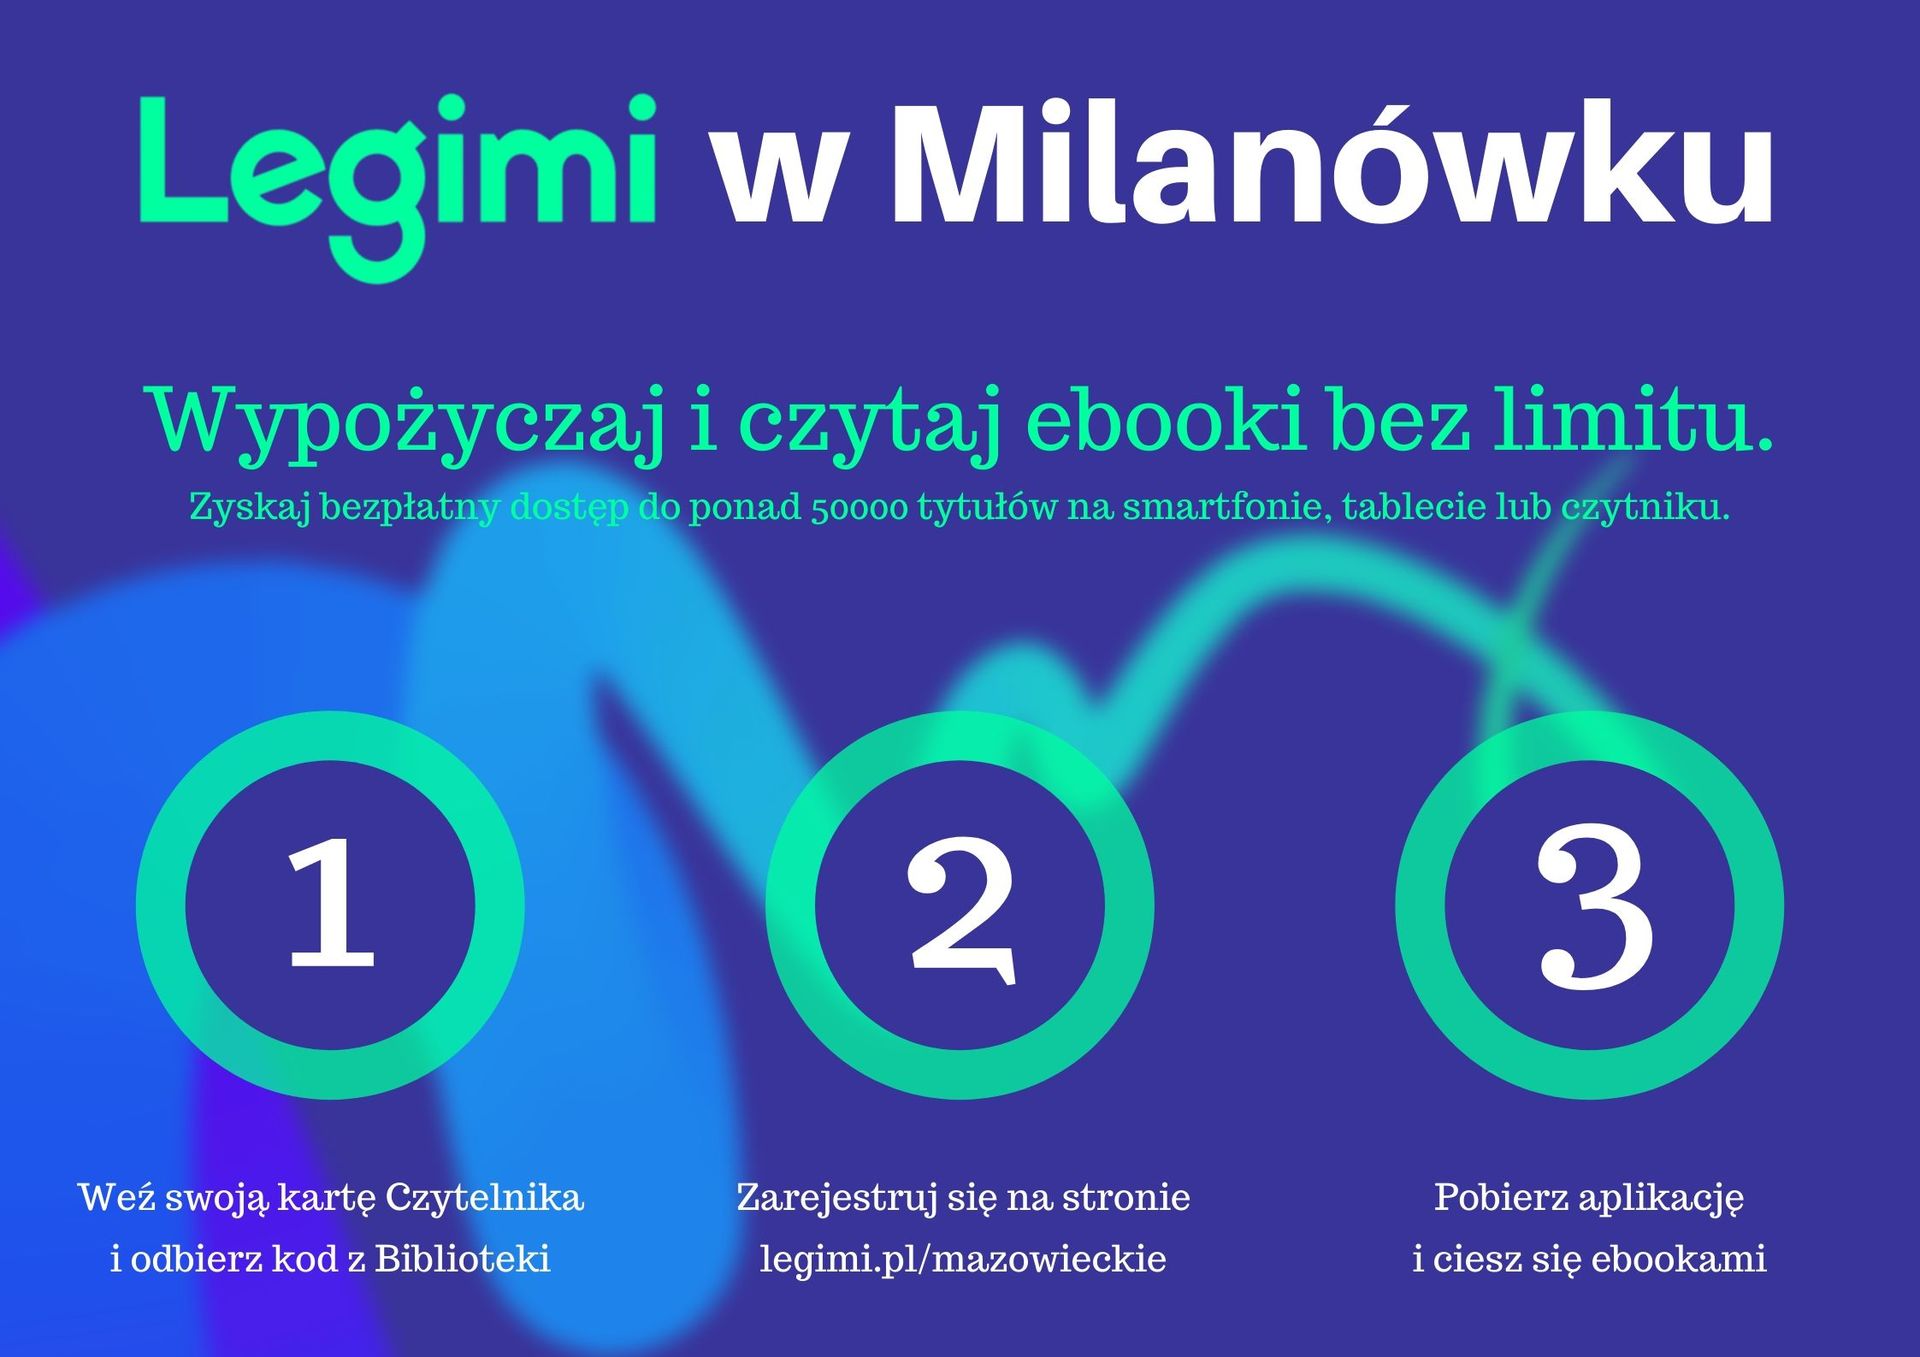 Legimi w Milanówku - plakat informujący o przystąpieniu do bazy książek elektronicznych